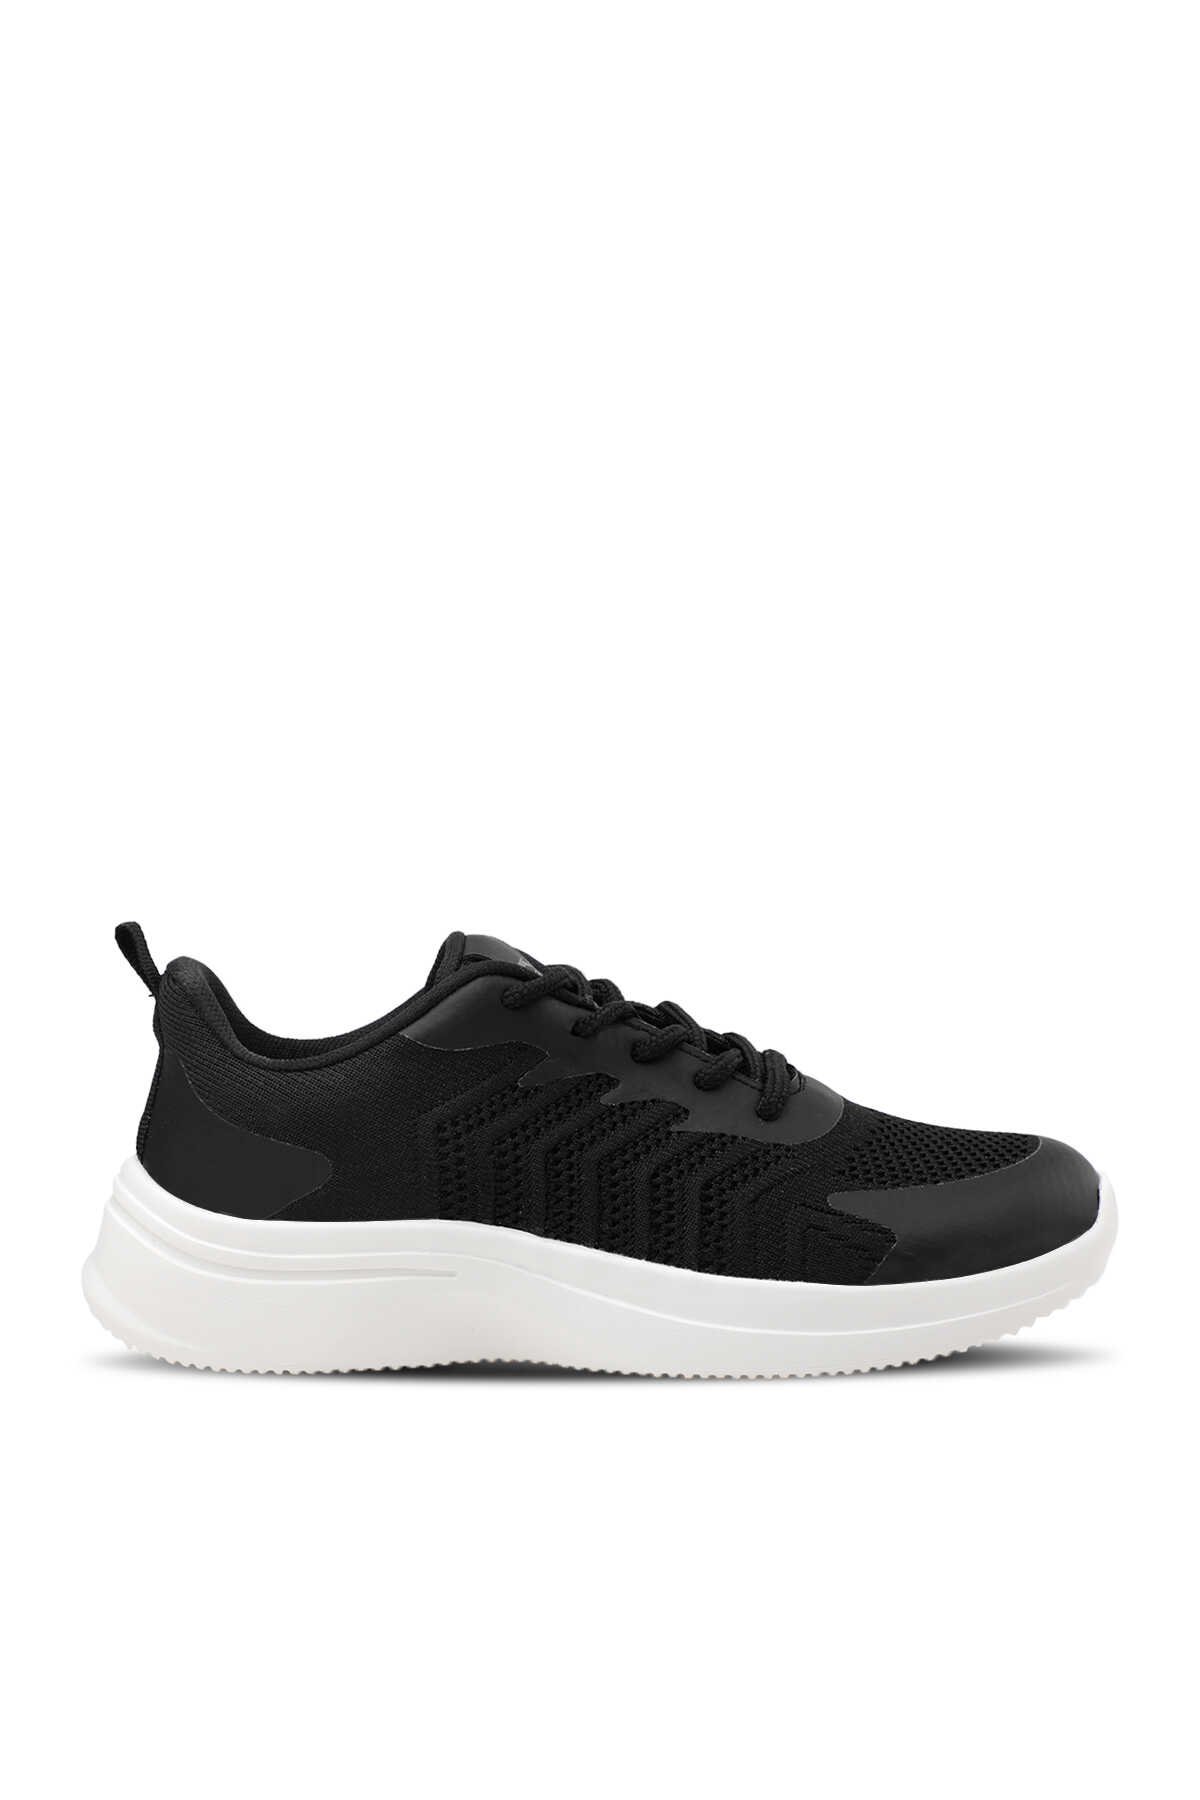 Slazenger - ACT I Sneaker Kadın Ayakkabı Siyah / Beyaz